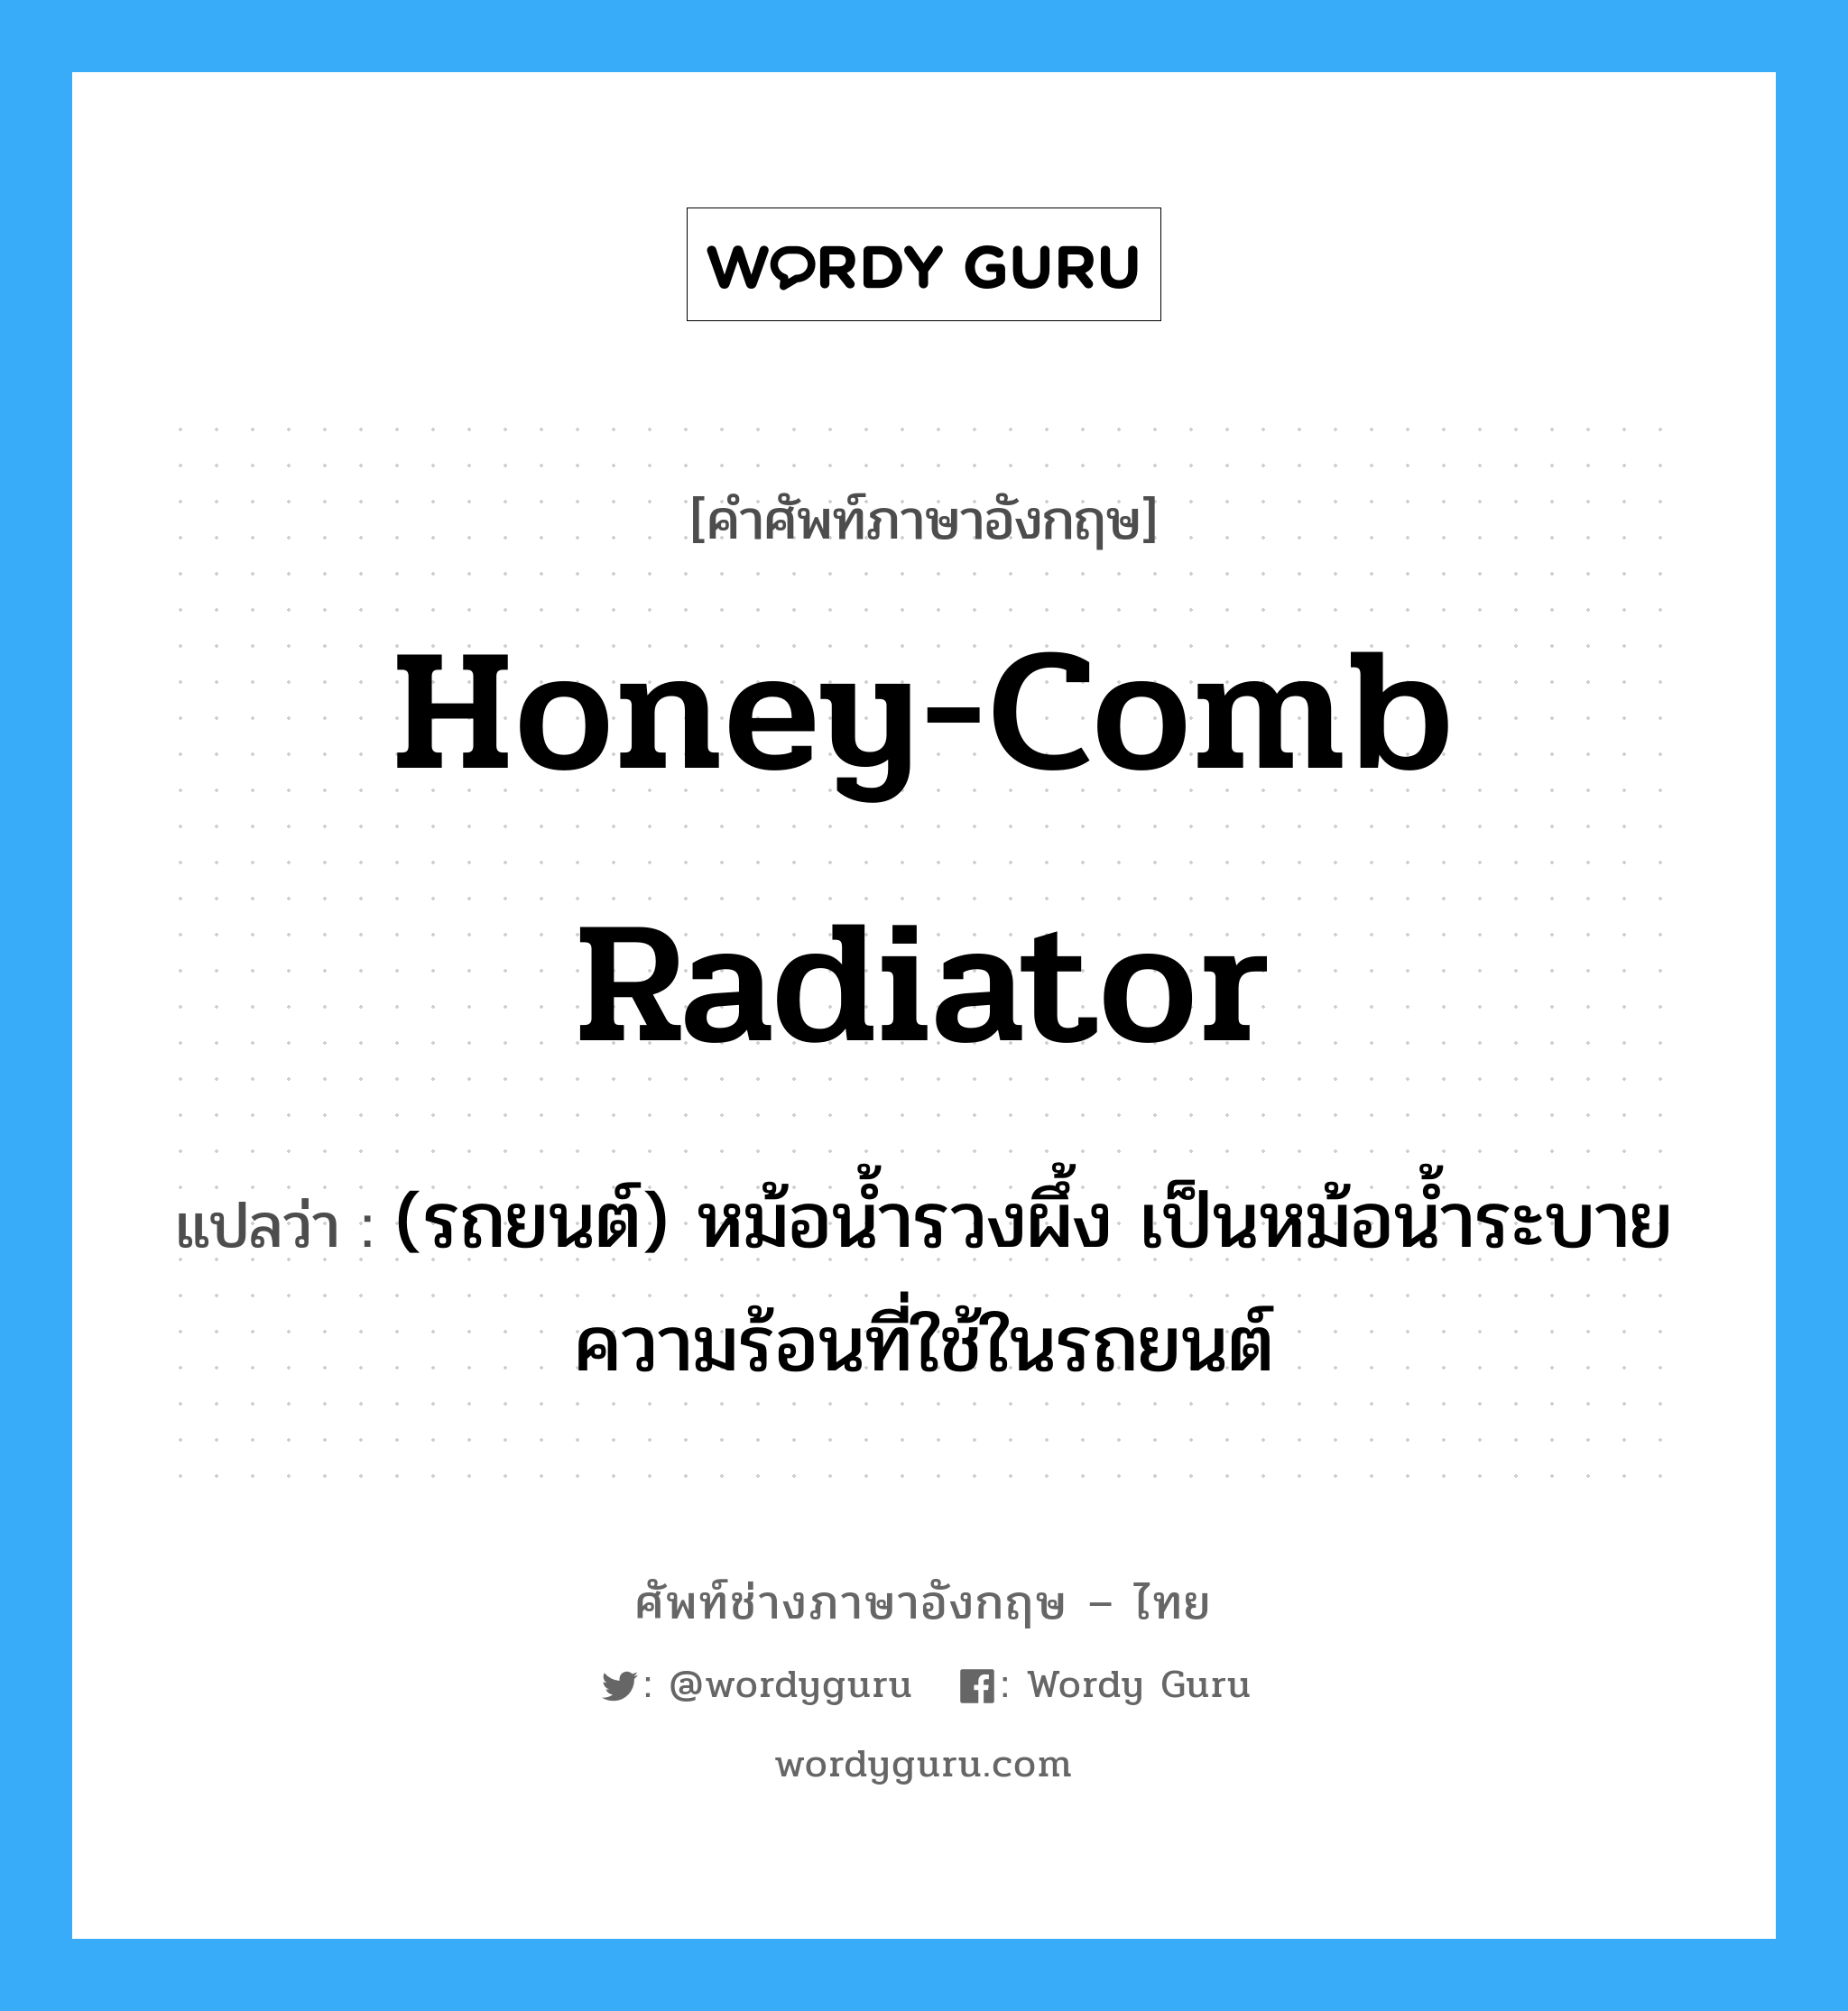 honey-comb radiator แปลว่า?, คำศัพท์ช่างภาษาอังกฤษ - ไทย honey-comb radiator คำศัพท์ภาษาอังกฤษ honey-comb radiator แปลว่า (รถยนต์) หม้อน้ำรวงผึ้ง เป็นหม้อน้ำระบายความร้อนที่ใช้ในรถยนต์